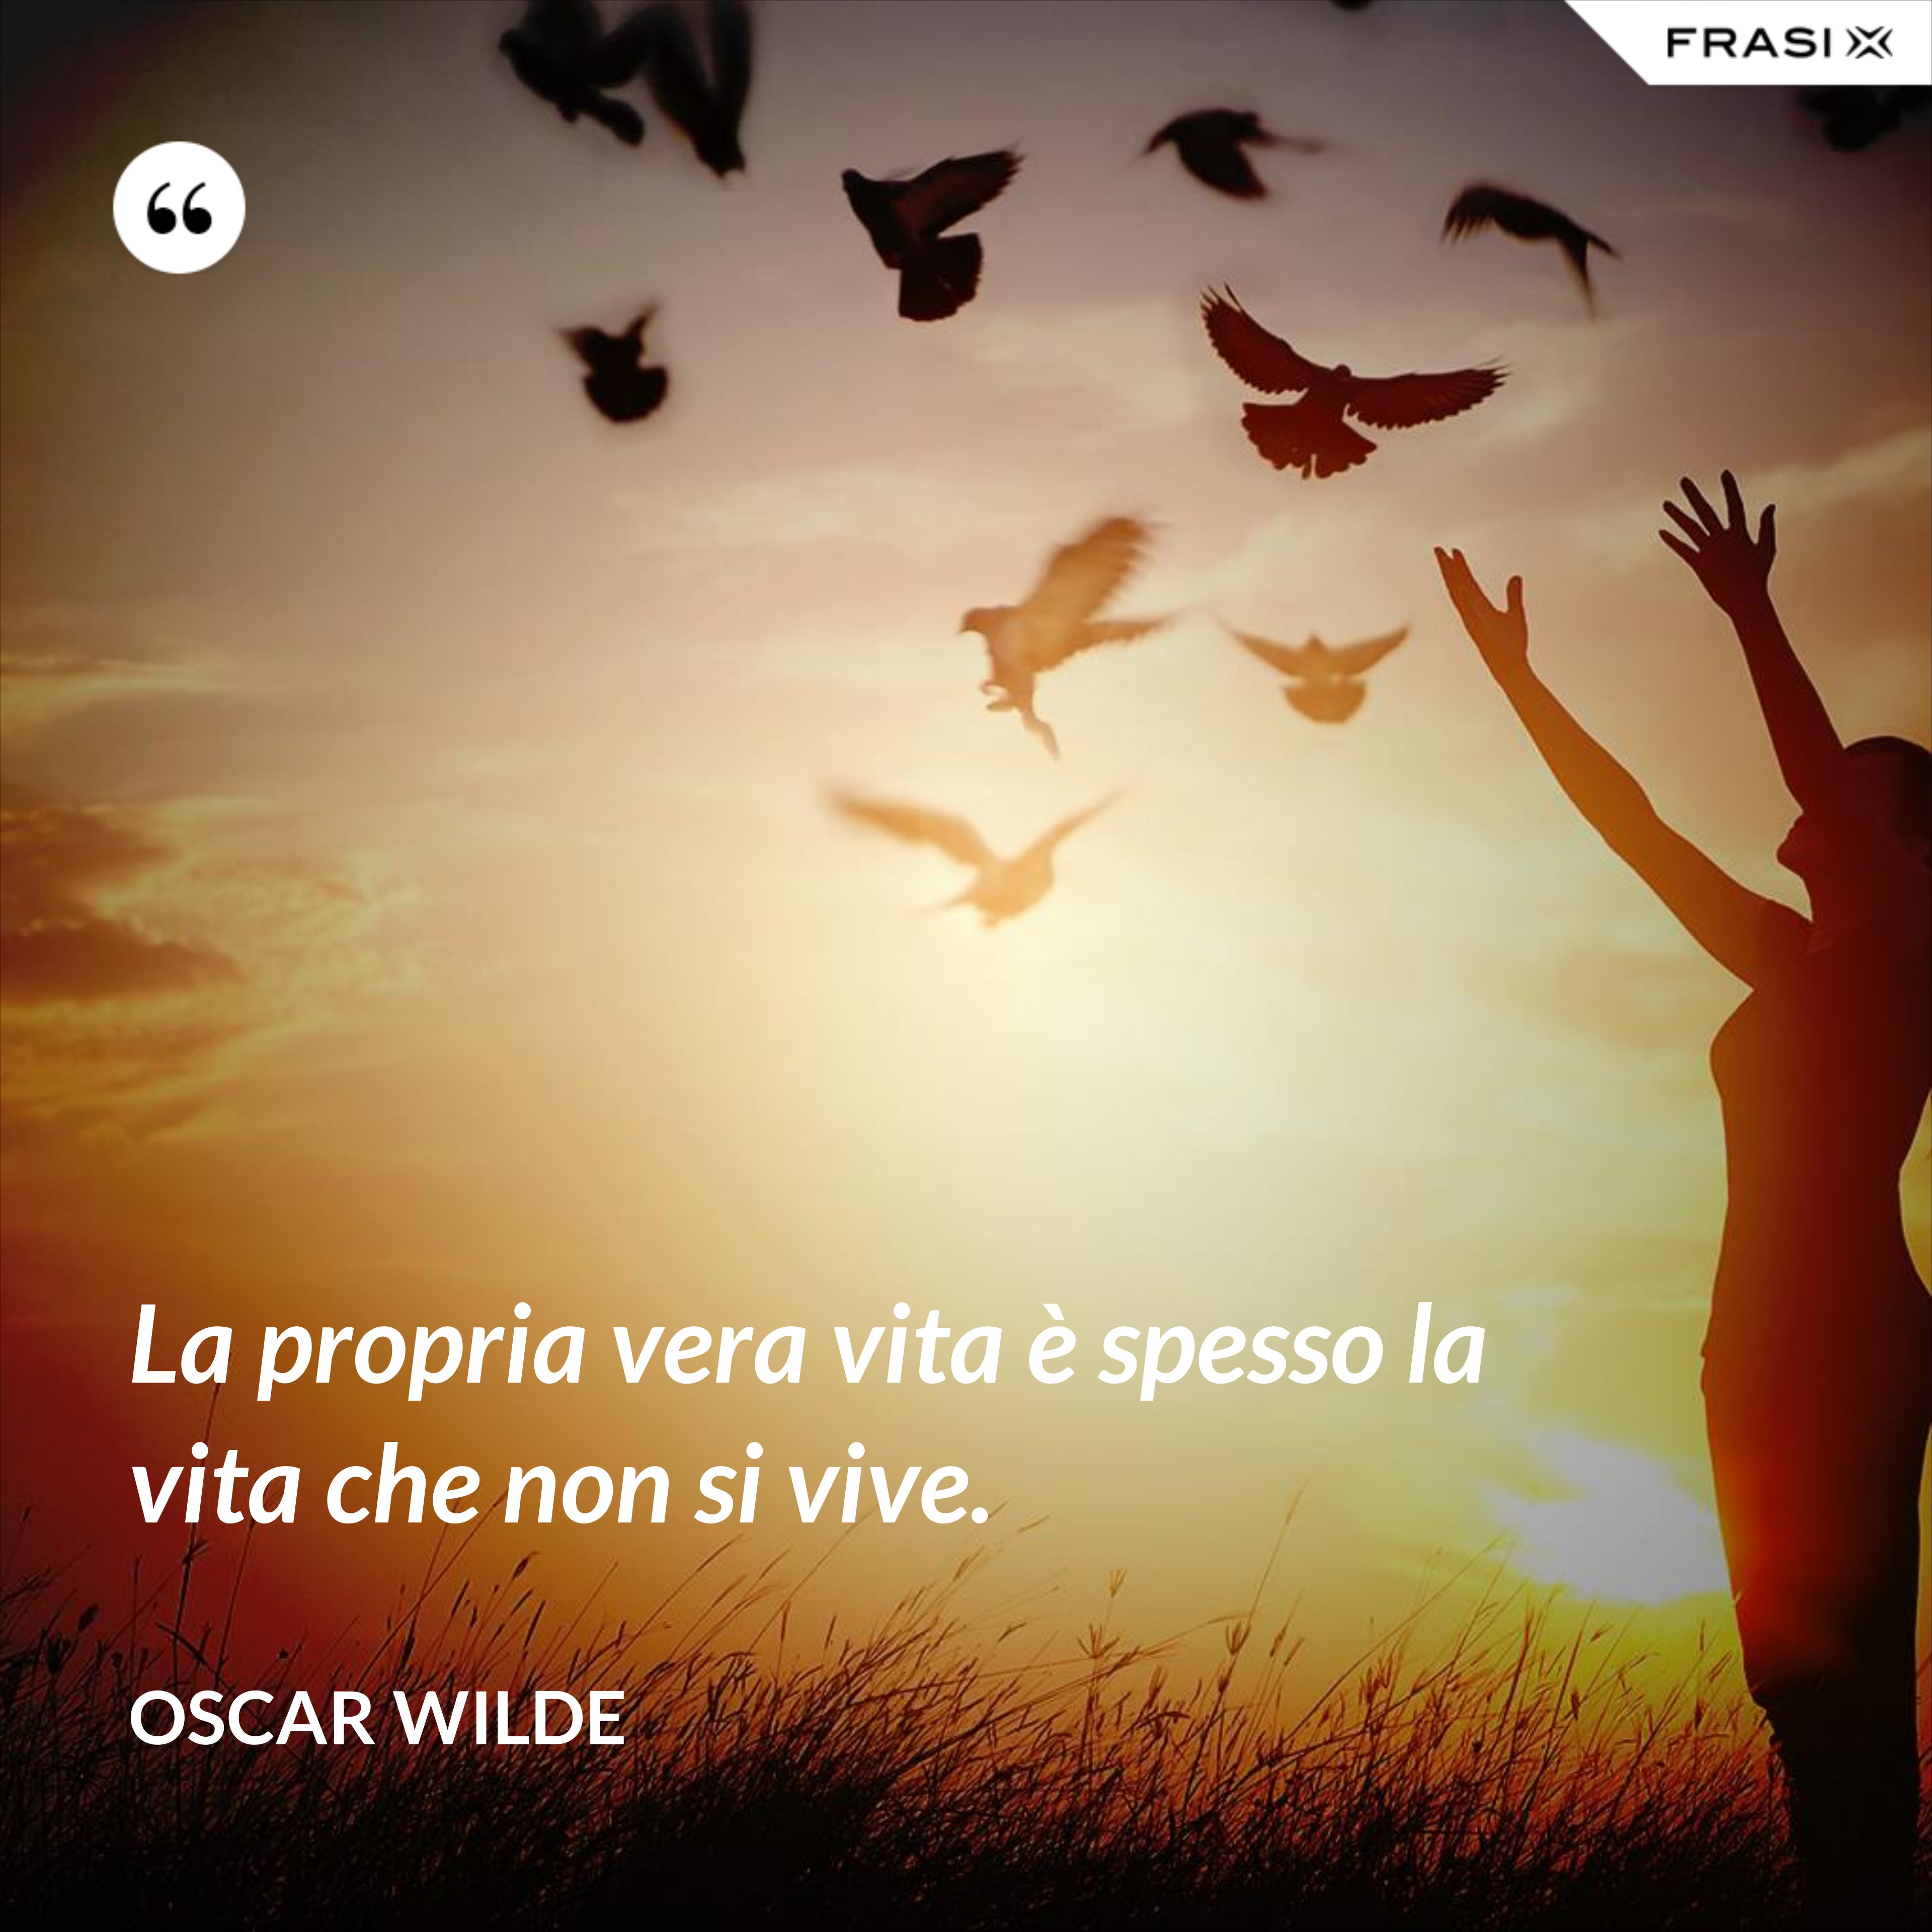 La propria vera vita è spesso la vita che non si vive. - Oscar Wilde